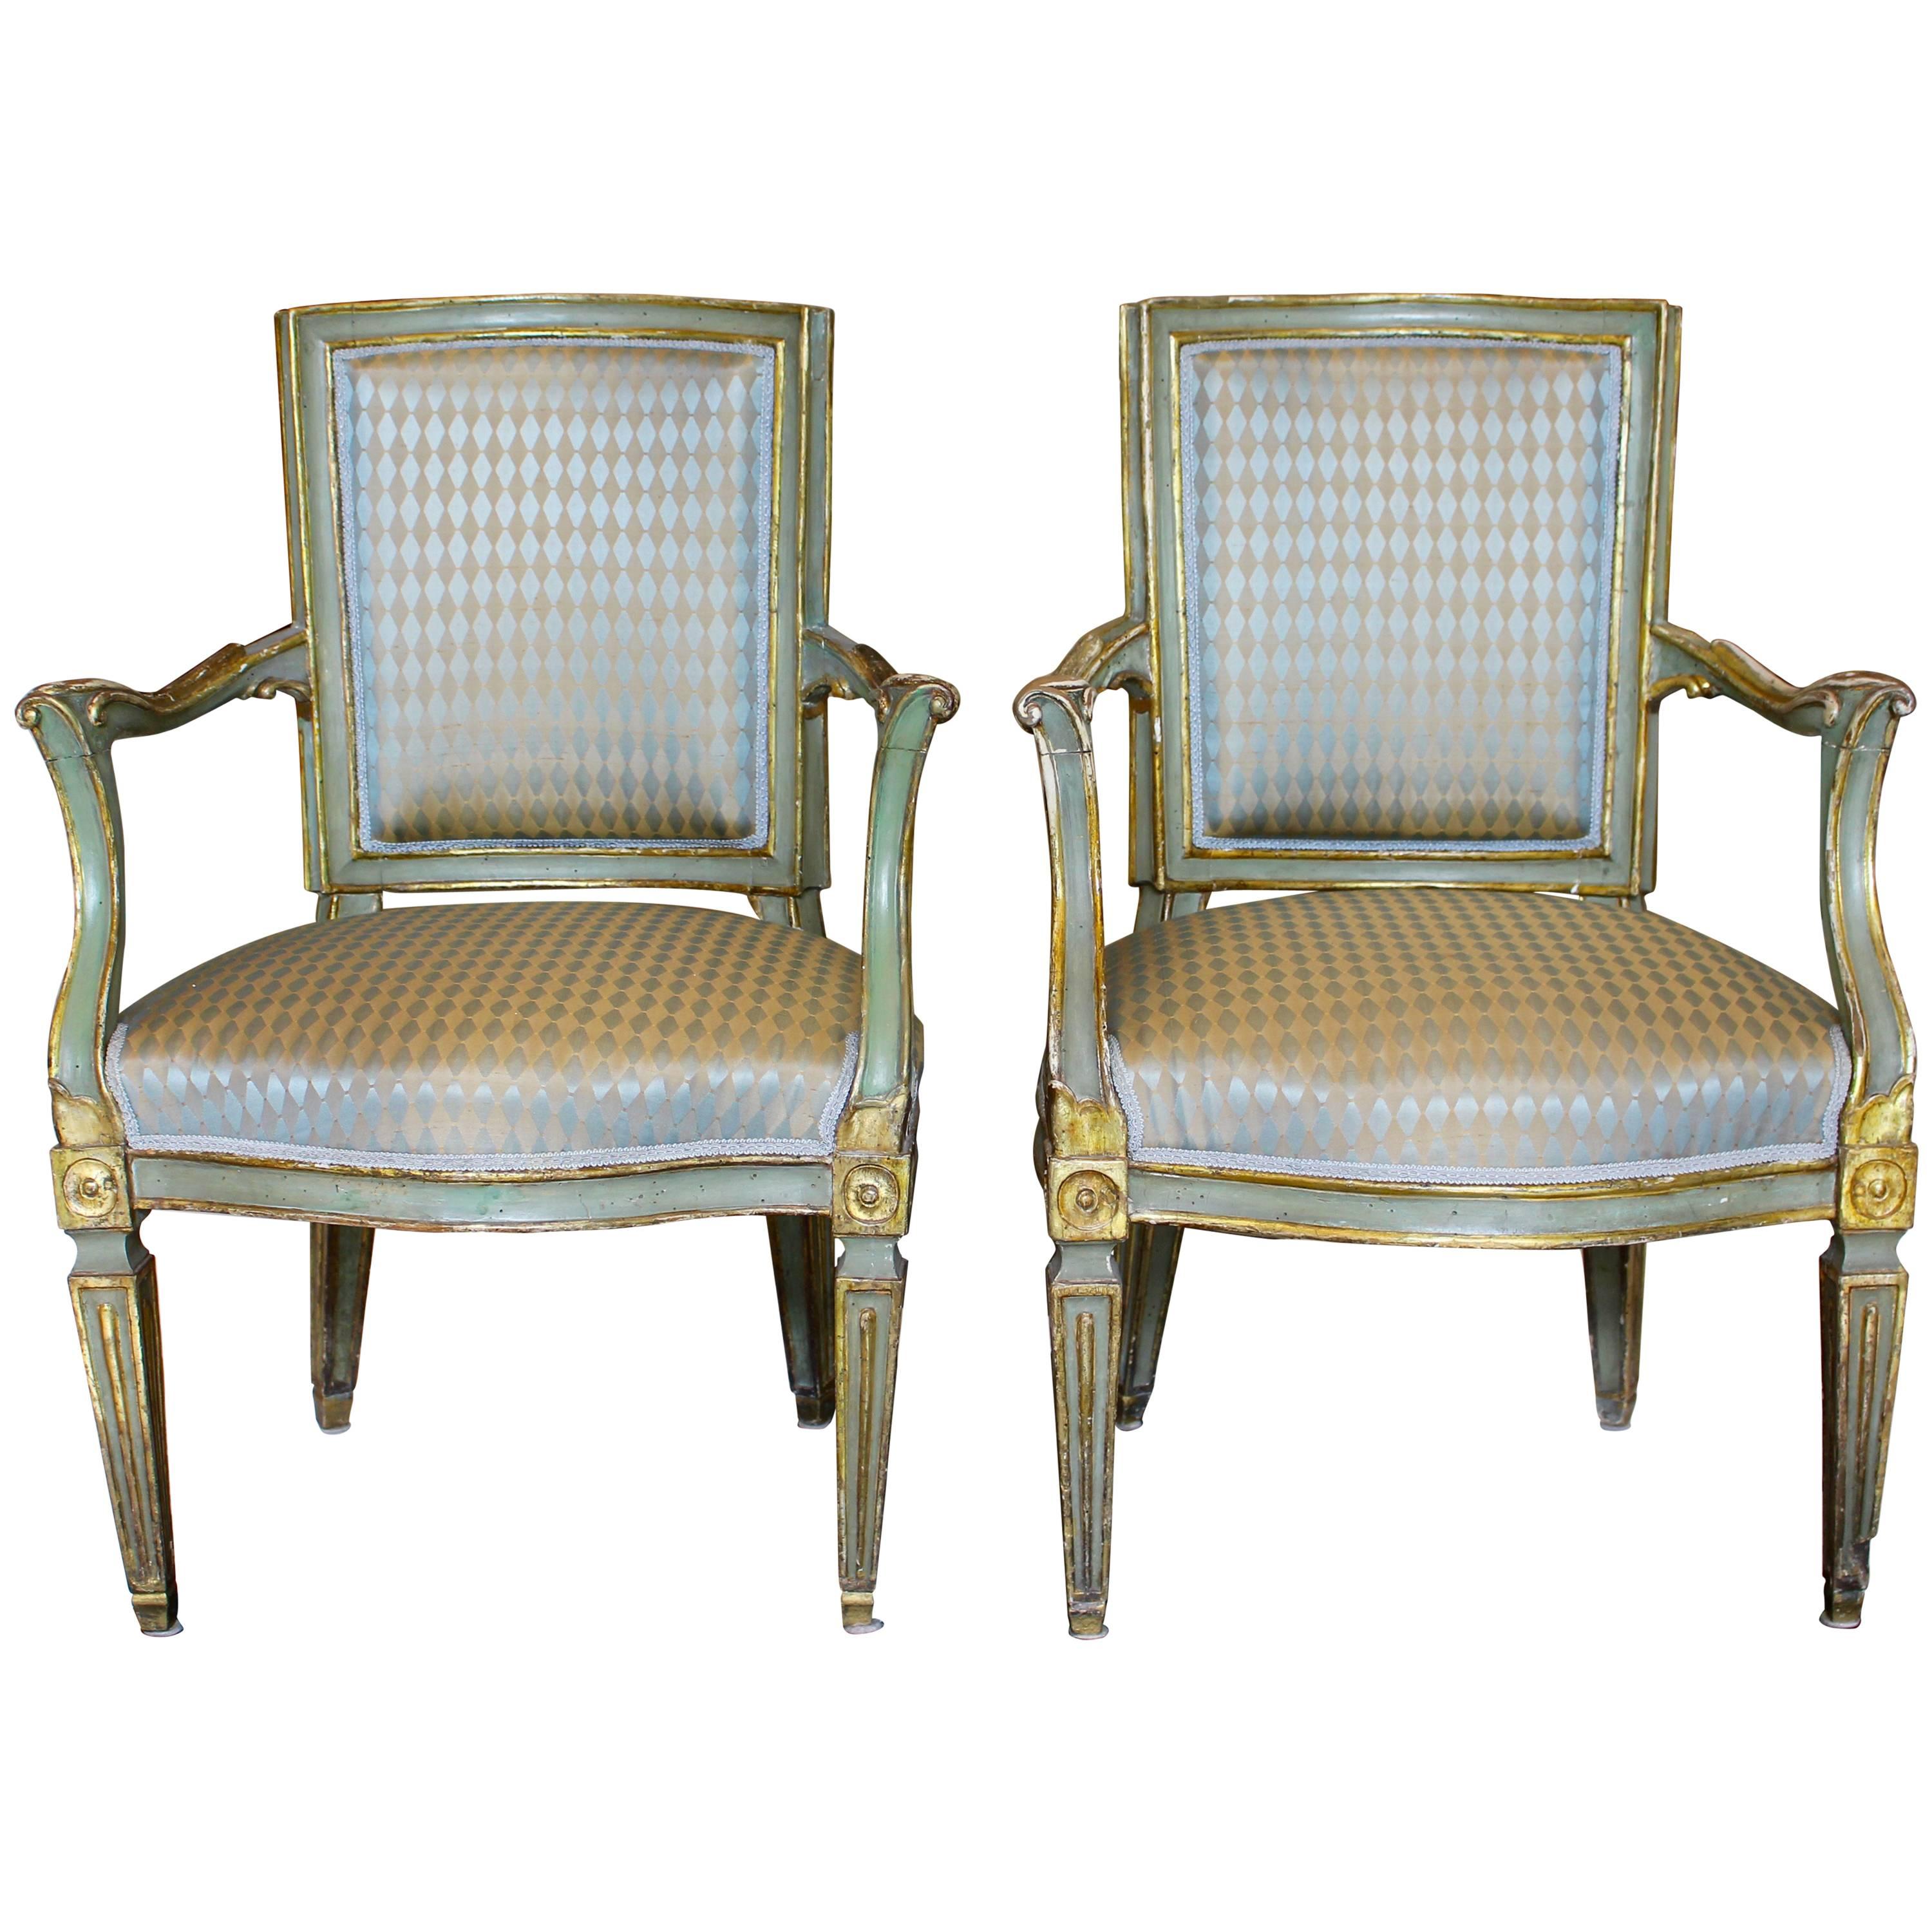 Paire de fauteuils italiens néoclassiques du 18ème siècle peints et partiellement dorés à la feuille